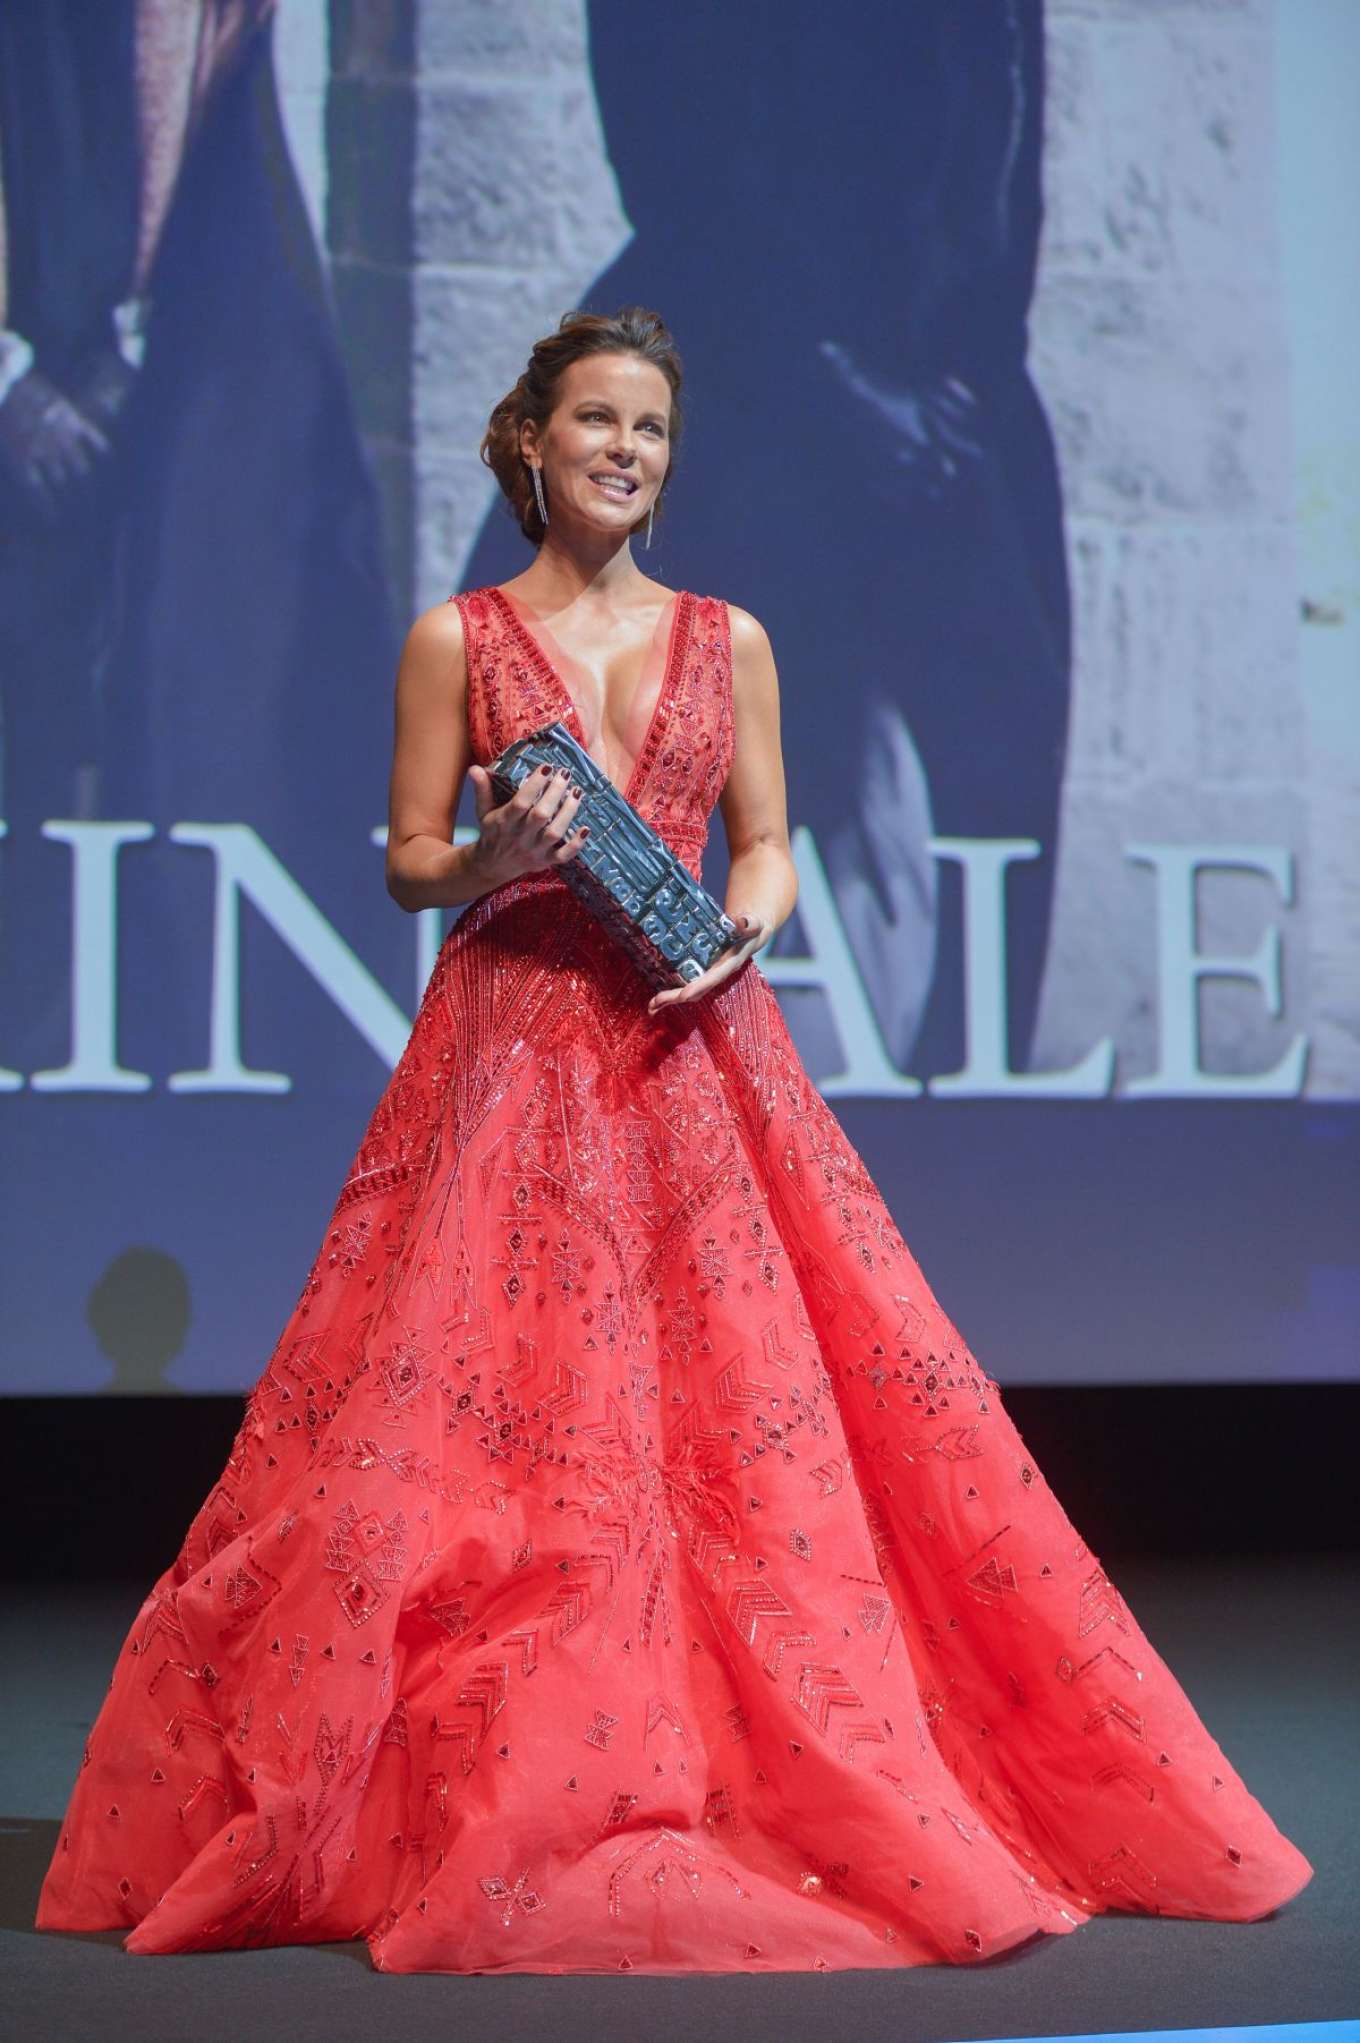 Kate Beckinsale â€“ Receiving Deauville Talent Award 2018